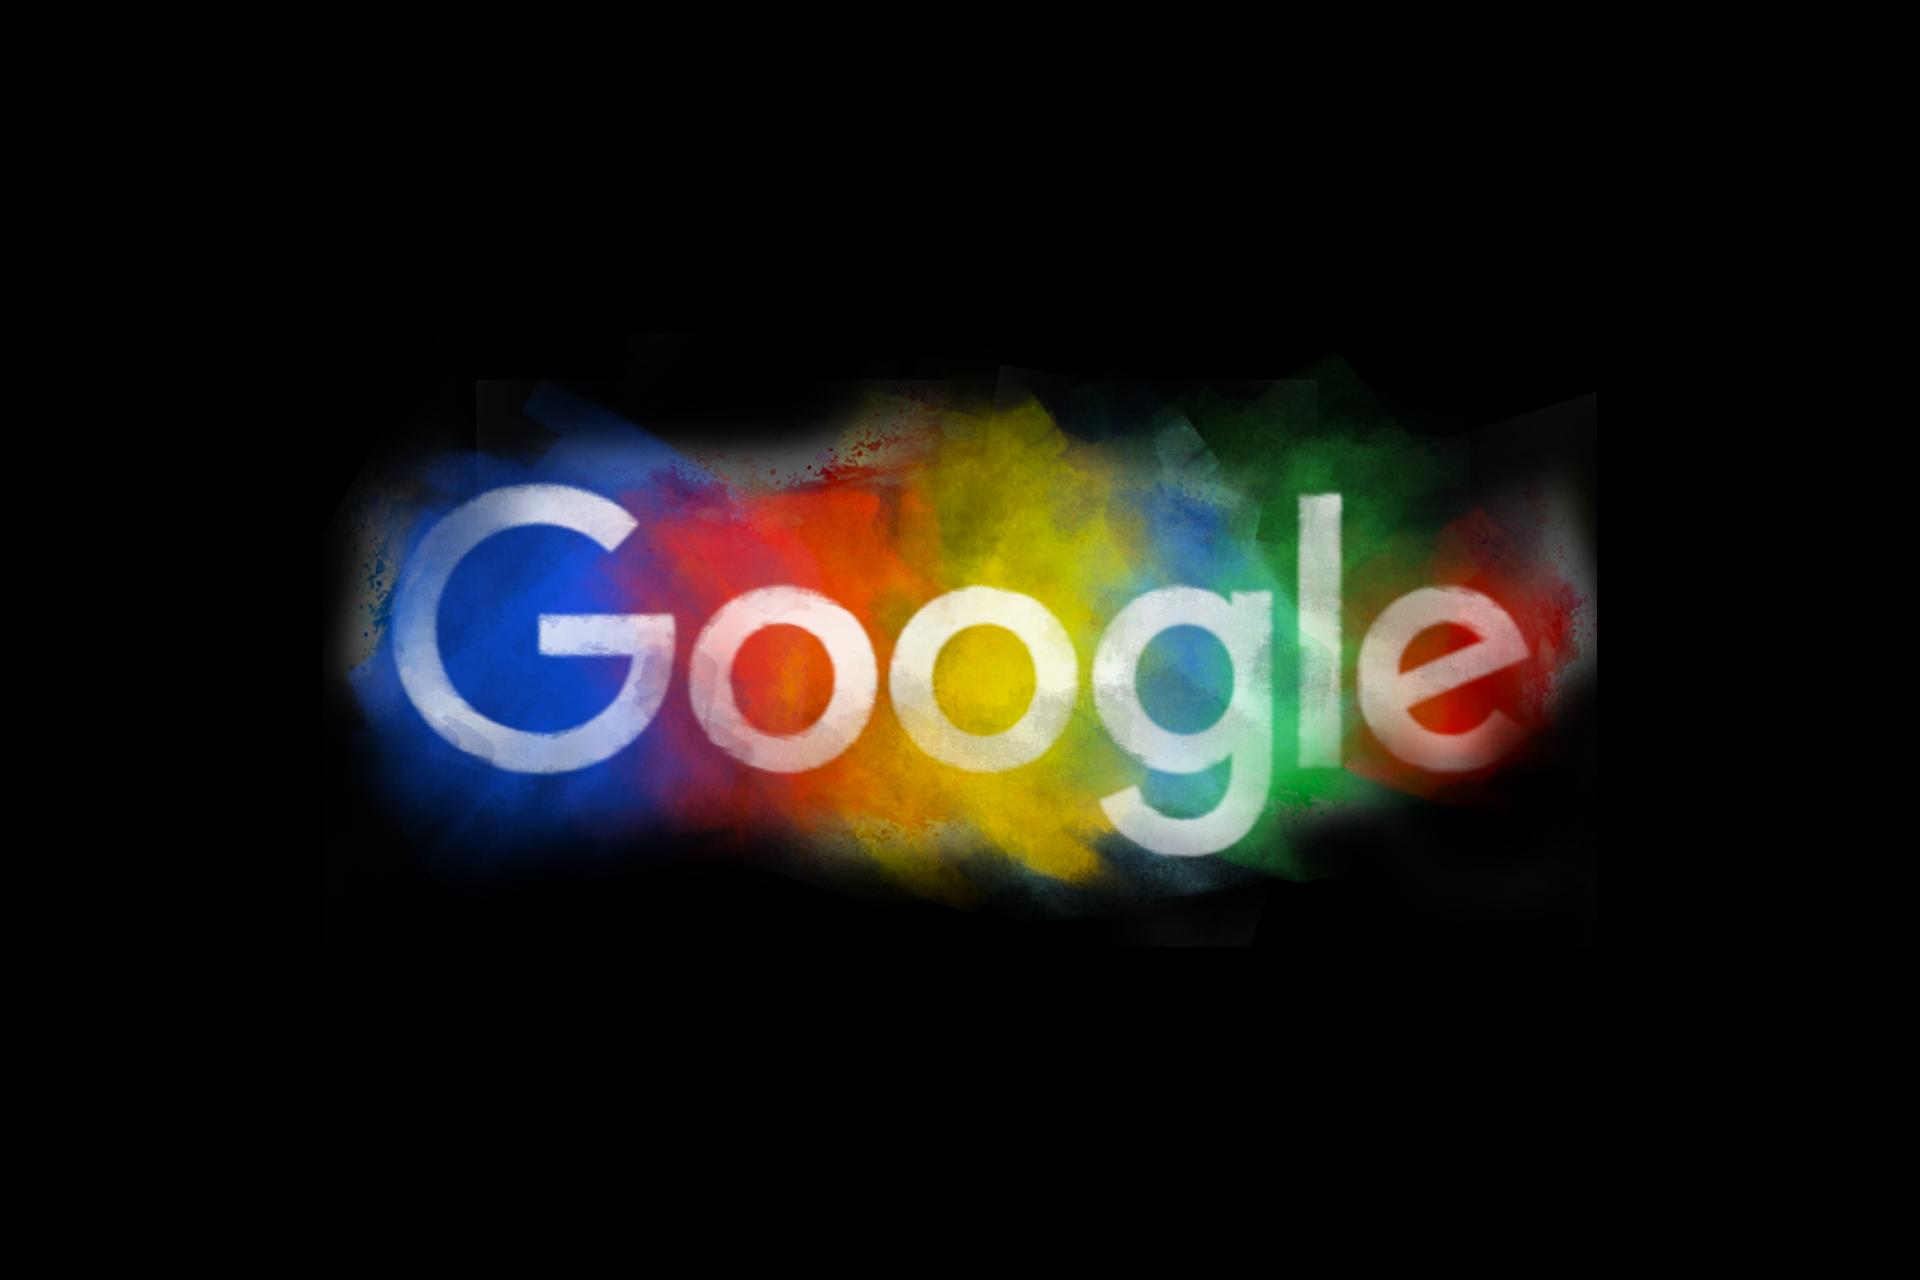 لوگو گوگل / Google Logo رنگی